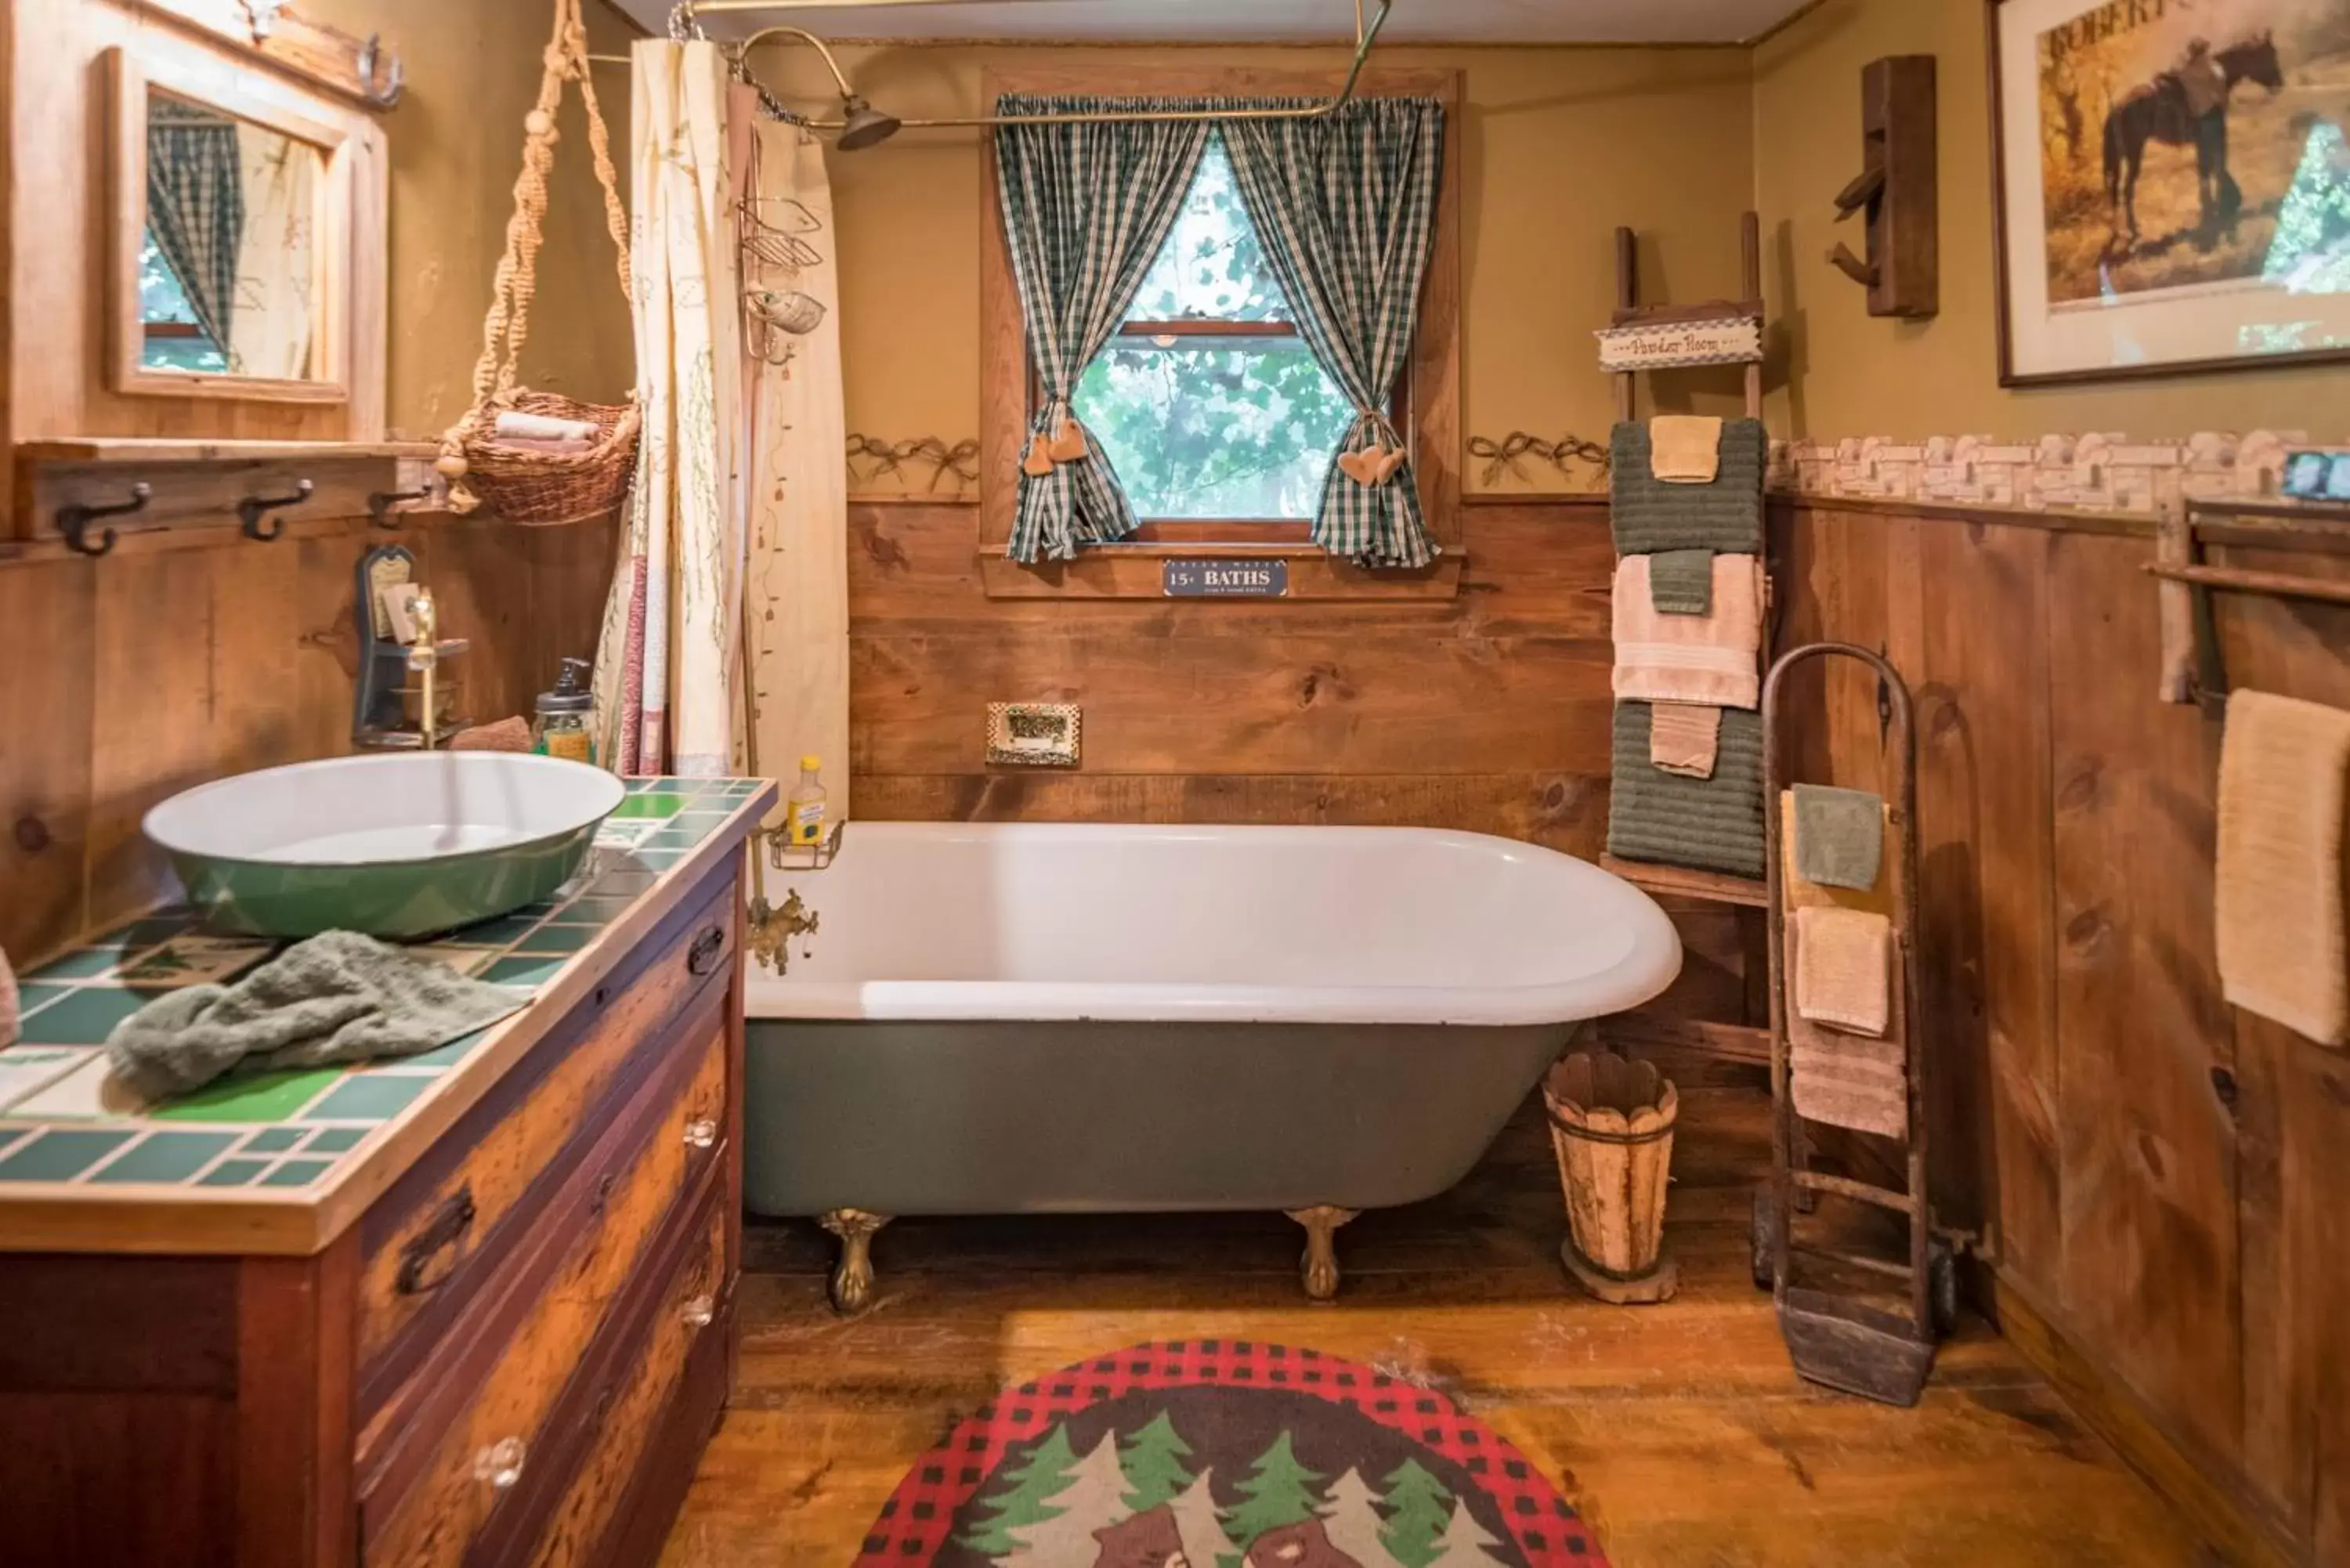 Bathroom in Country Woods Inn